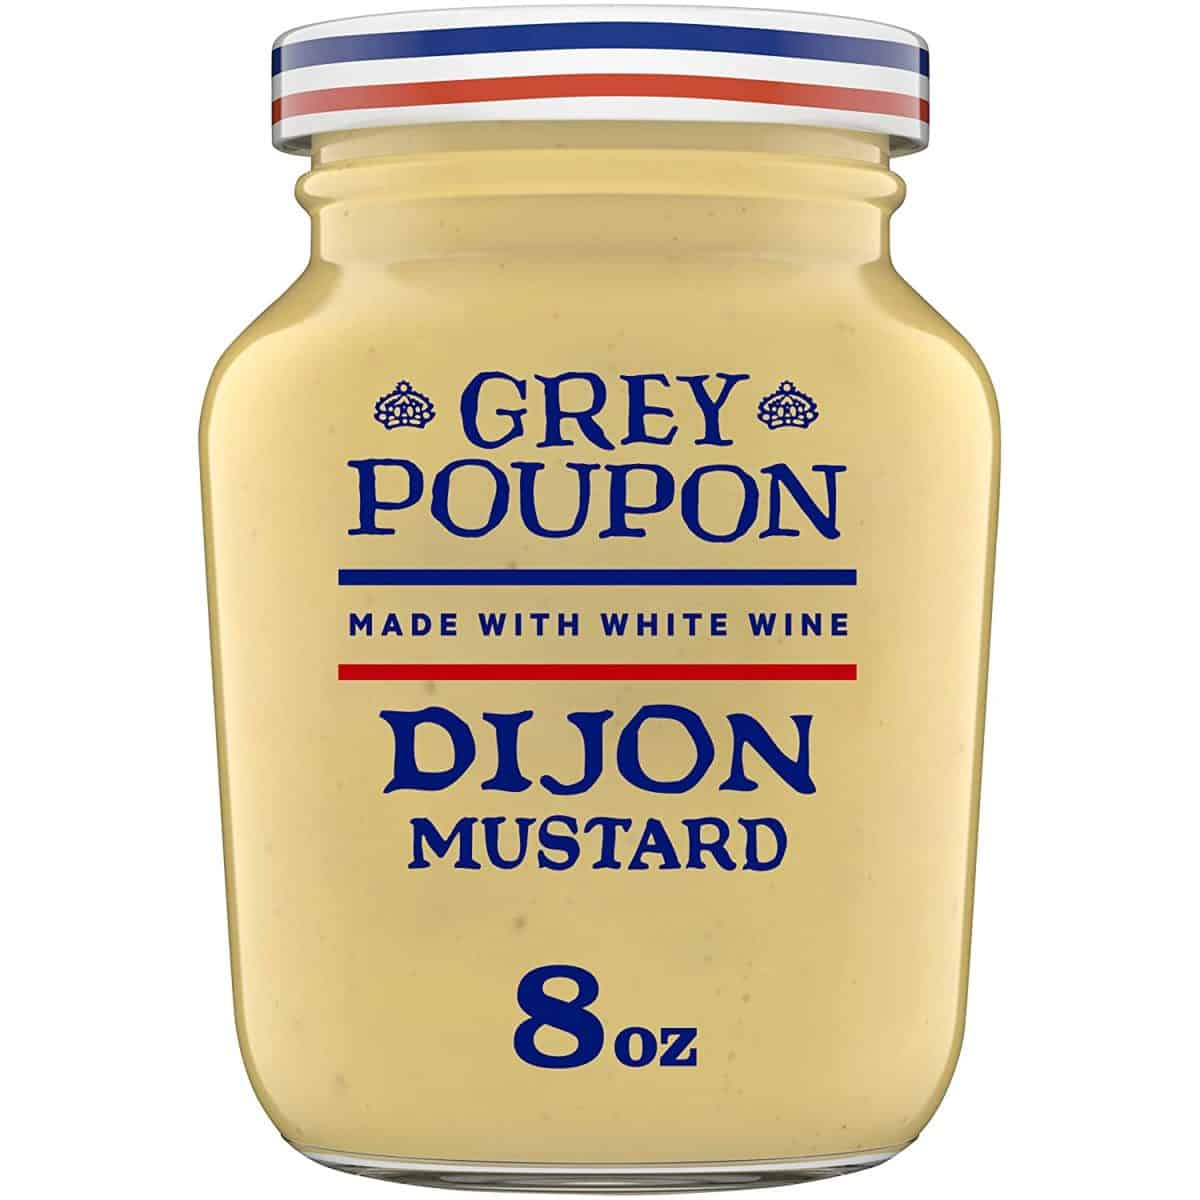 Le meilleur substitut à la poudre de moutarde est la moutarde de Dijon